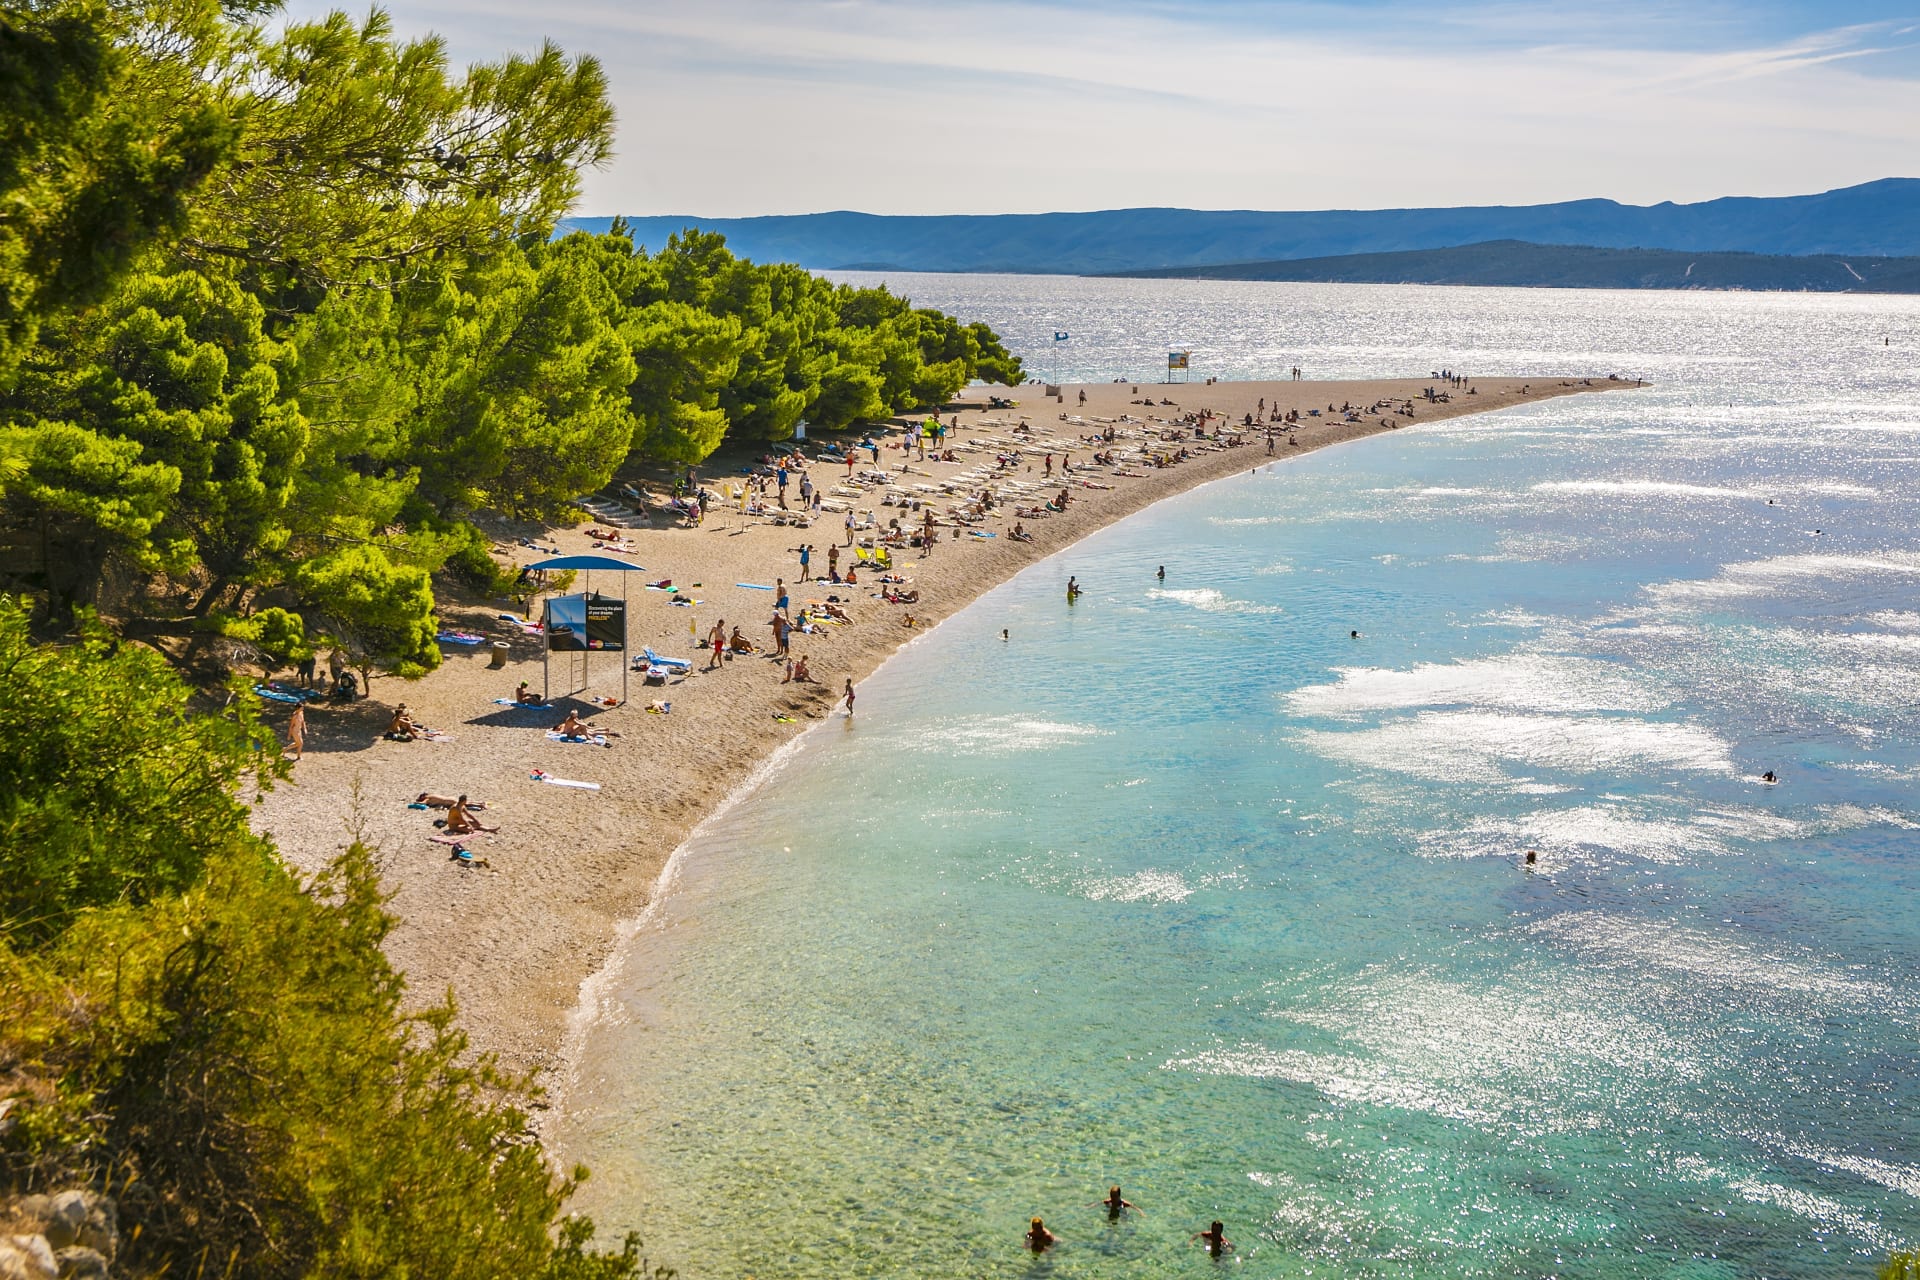 Pláž Zlatni Rat v Chorvatsku se umístila na dvanáctém místě.